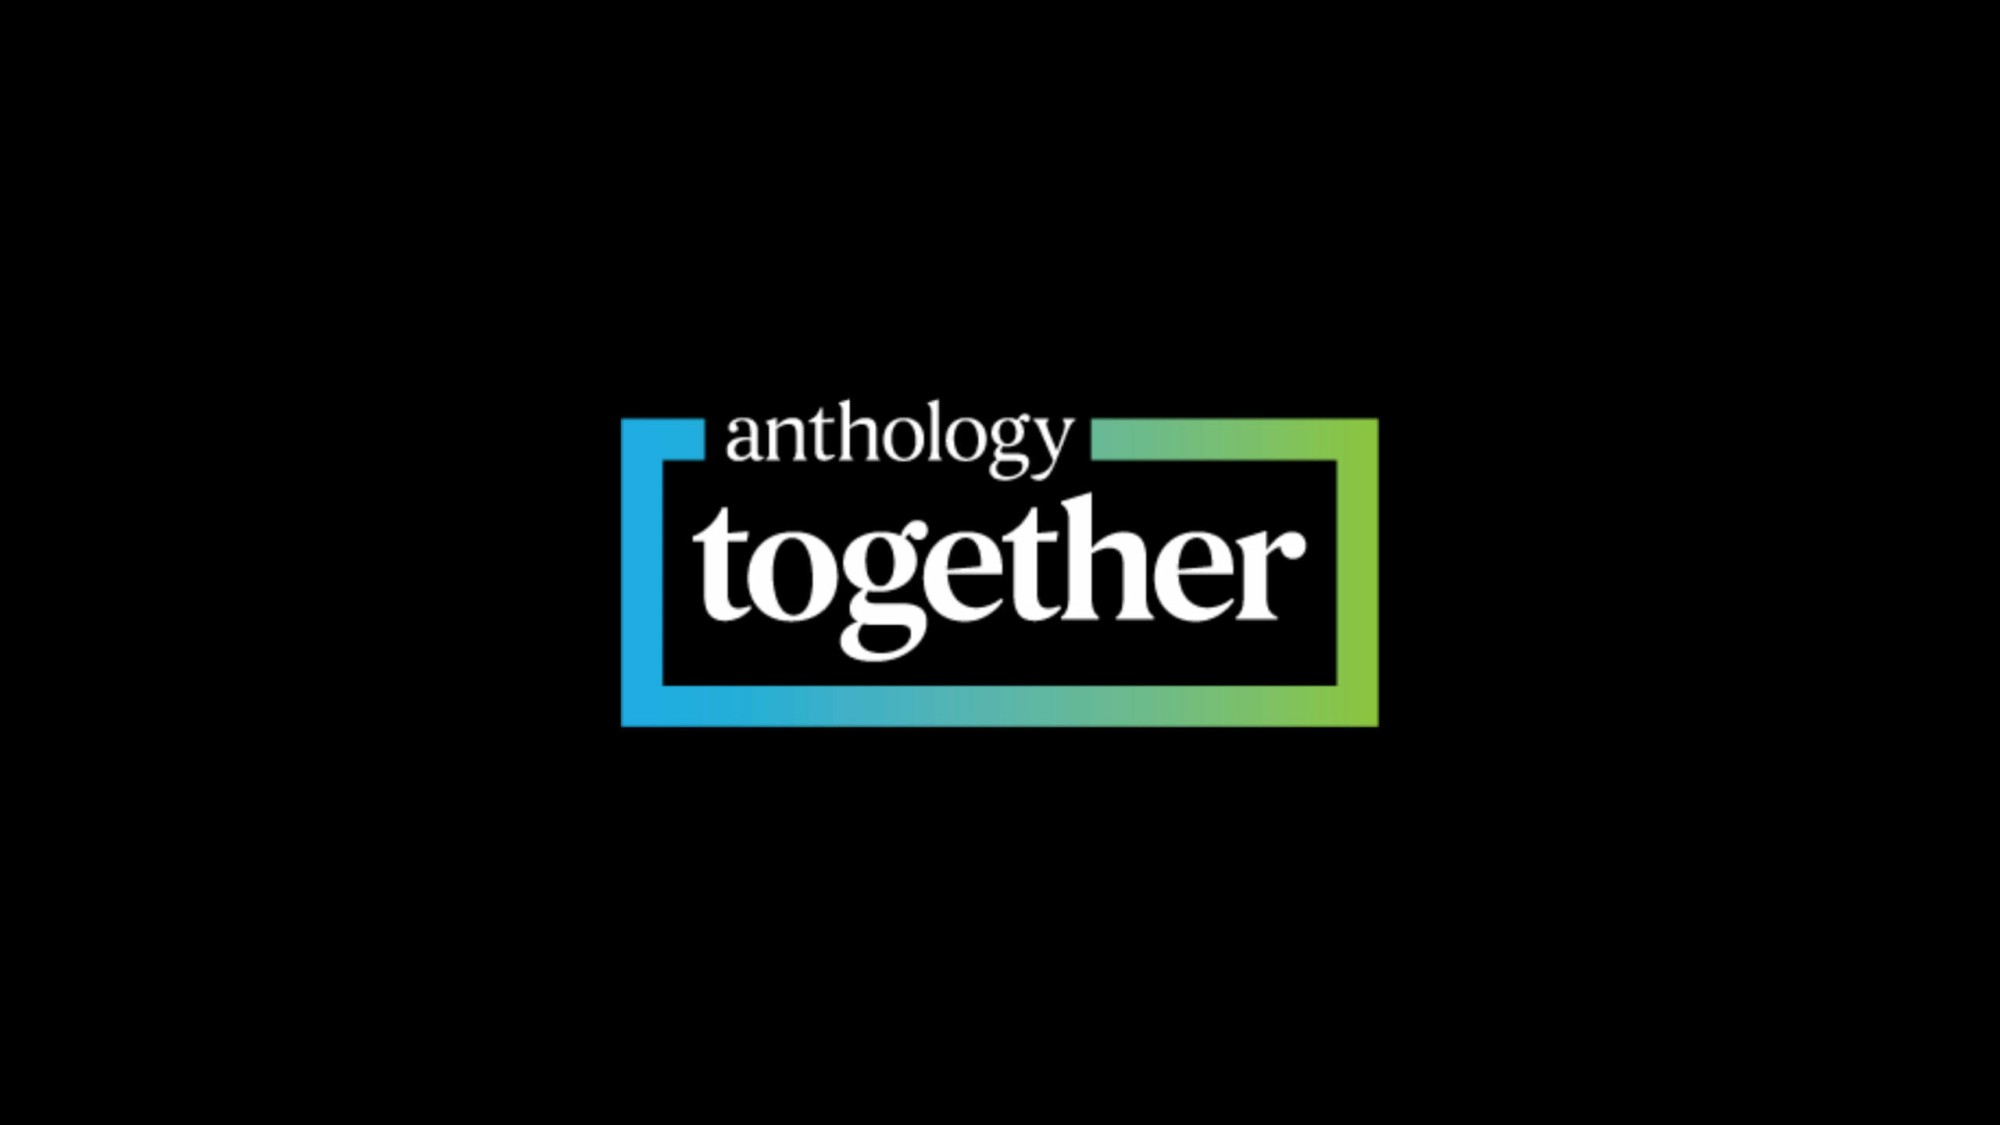 Anthology Kicks Off Annual ‘Anthology Together’ User Conference Anthology